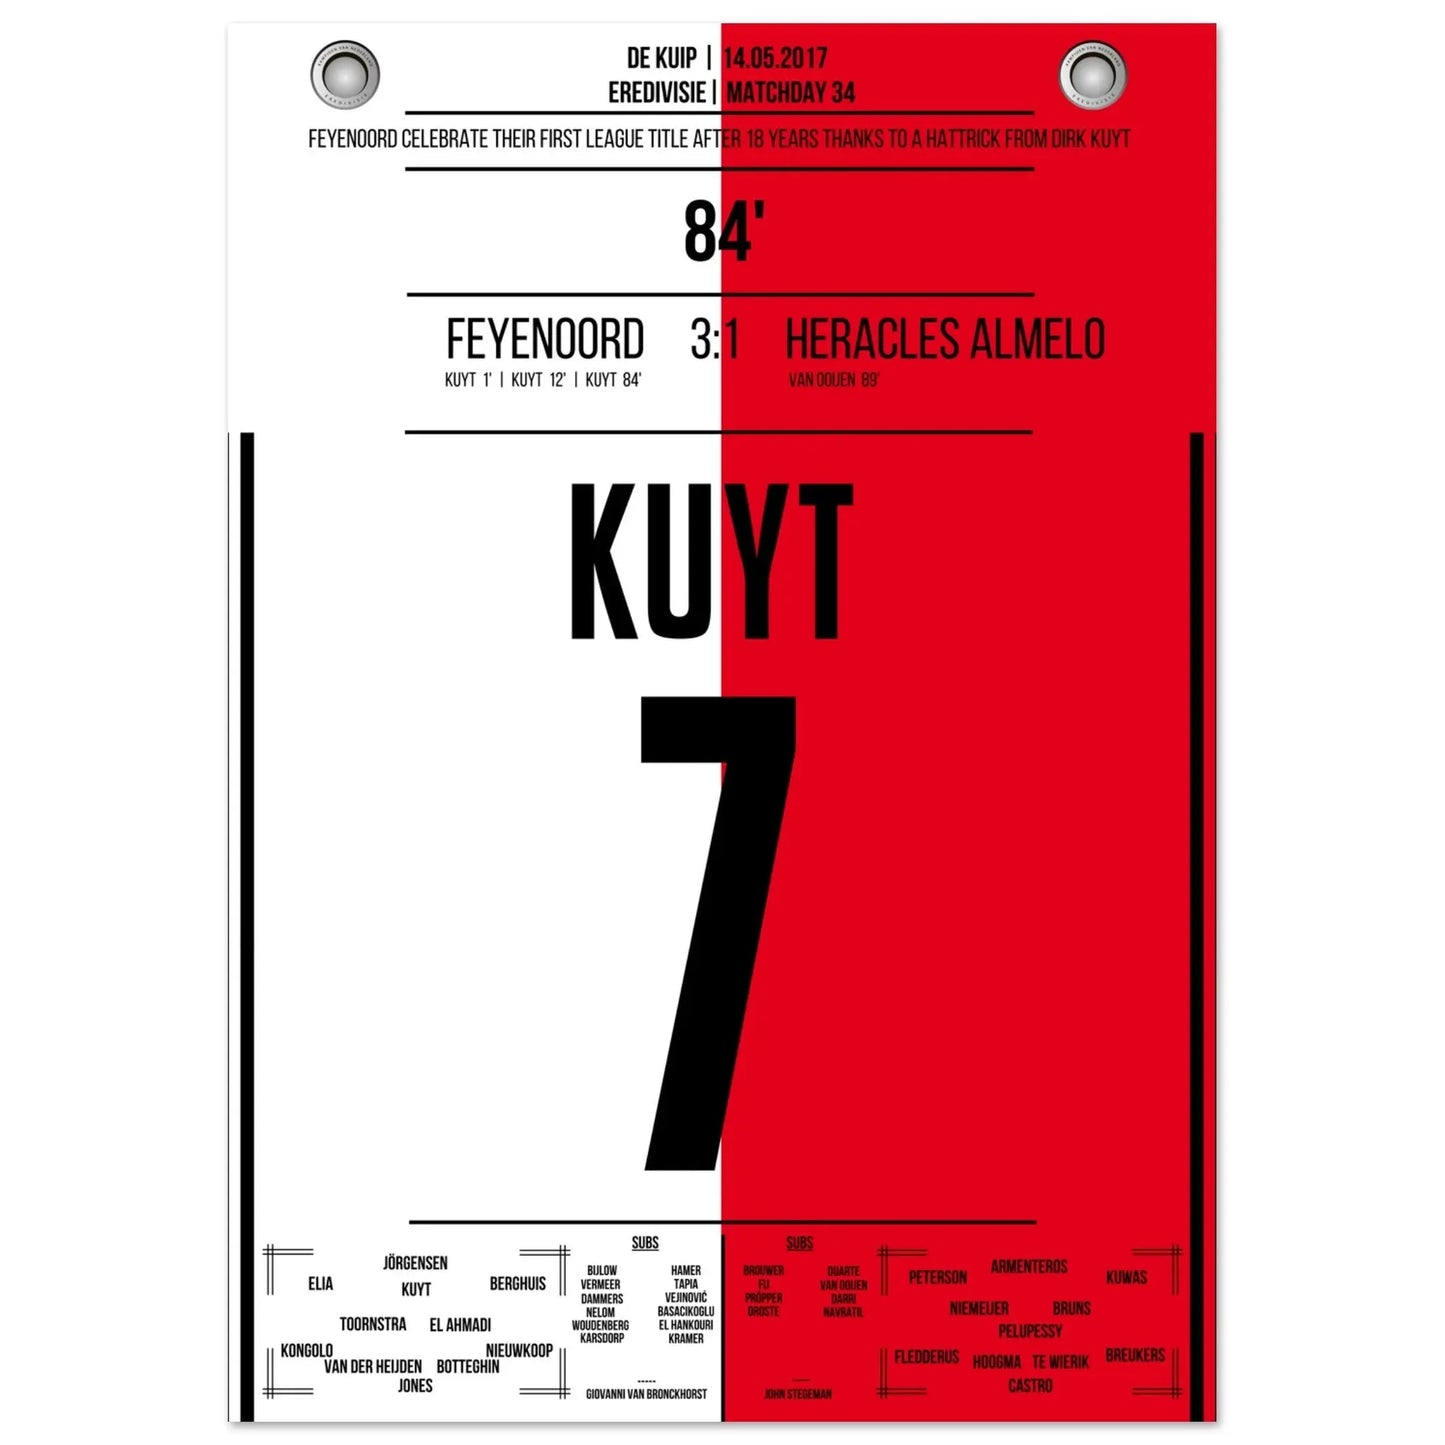 Kuyt Hattrick zum ersten Meistertitel nach 18 Jahren für Feyenoord